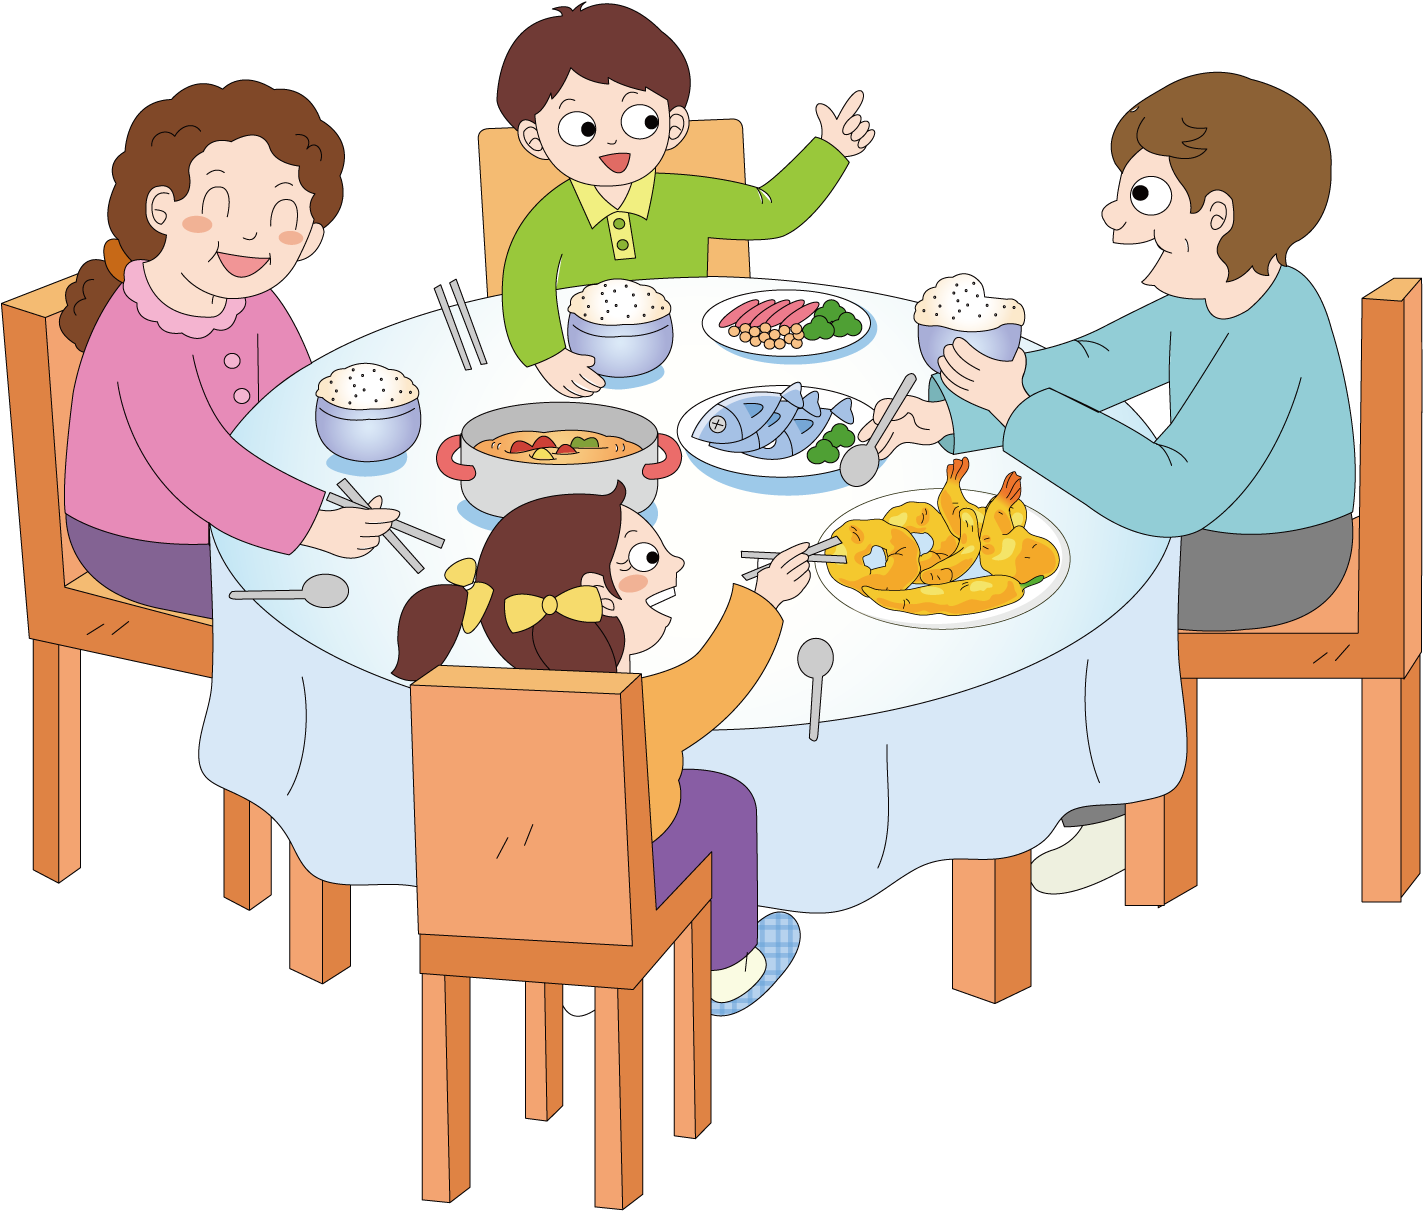 Картинка детей сидящих за столом. Семья обедает за столом. Дети за столом обедают. Иллюстрация дети обедают. Обед иллюстрация для детей.